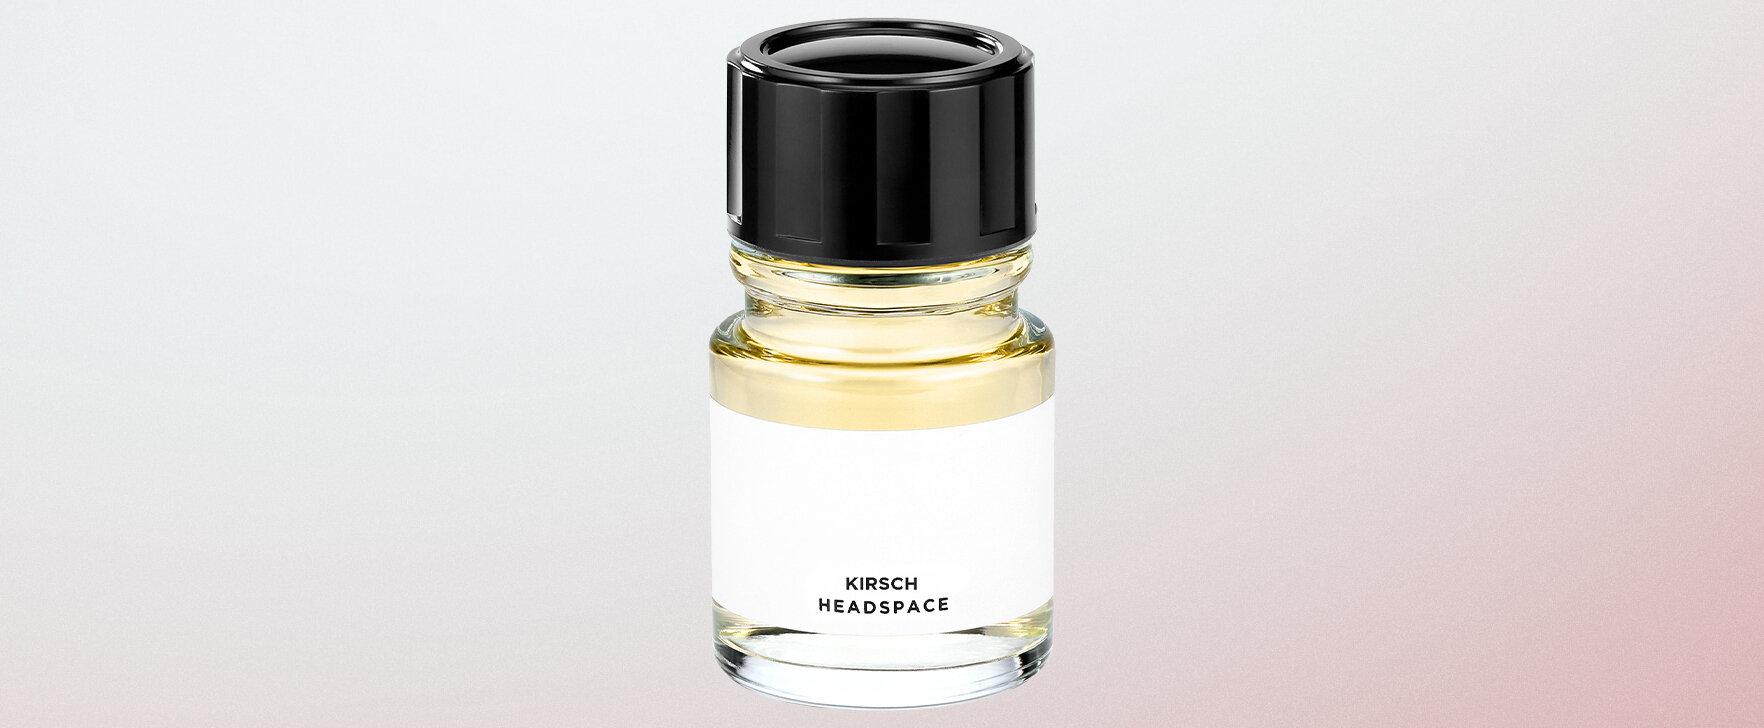 The Kirsch Eau de Parfum by Headspace: A Tribute to Temptation